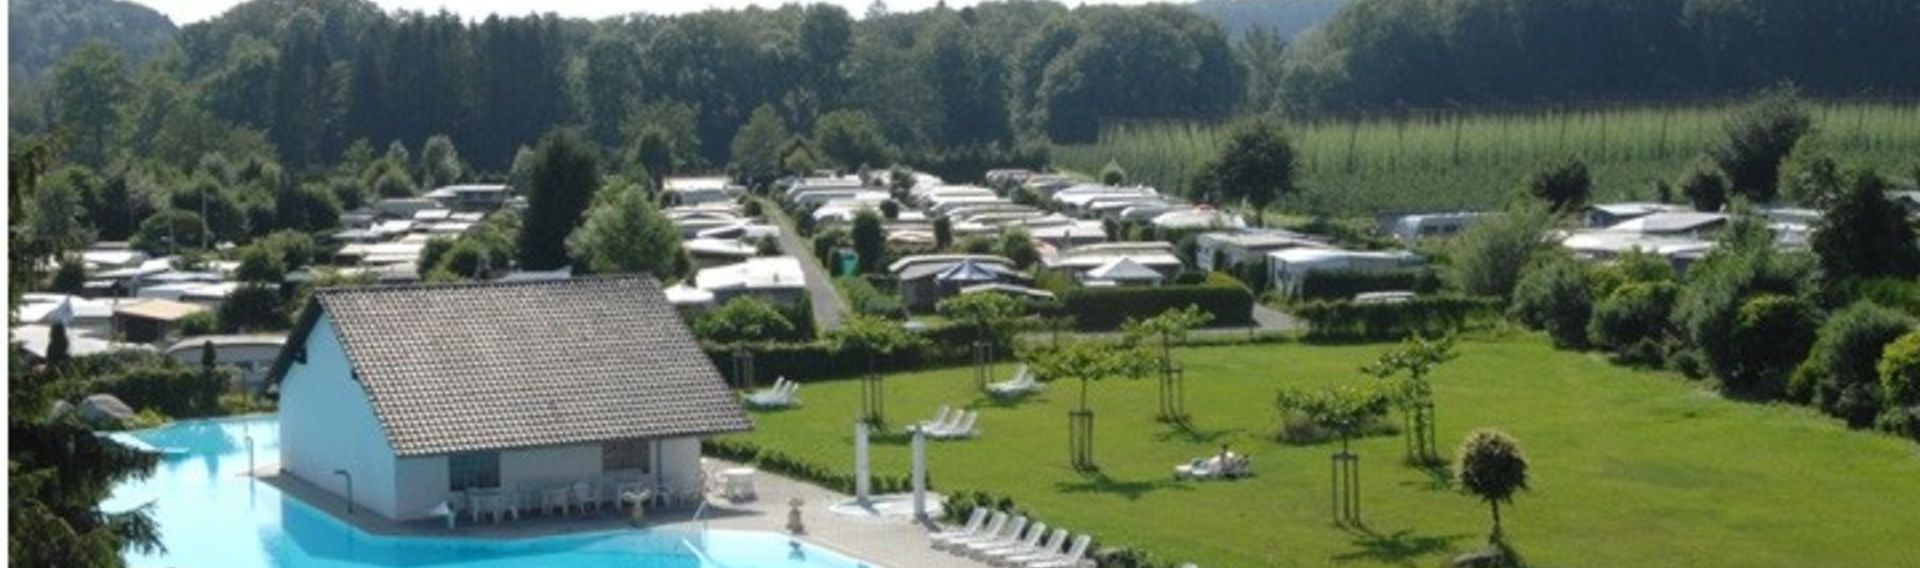 Campingplatz Bodensee